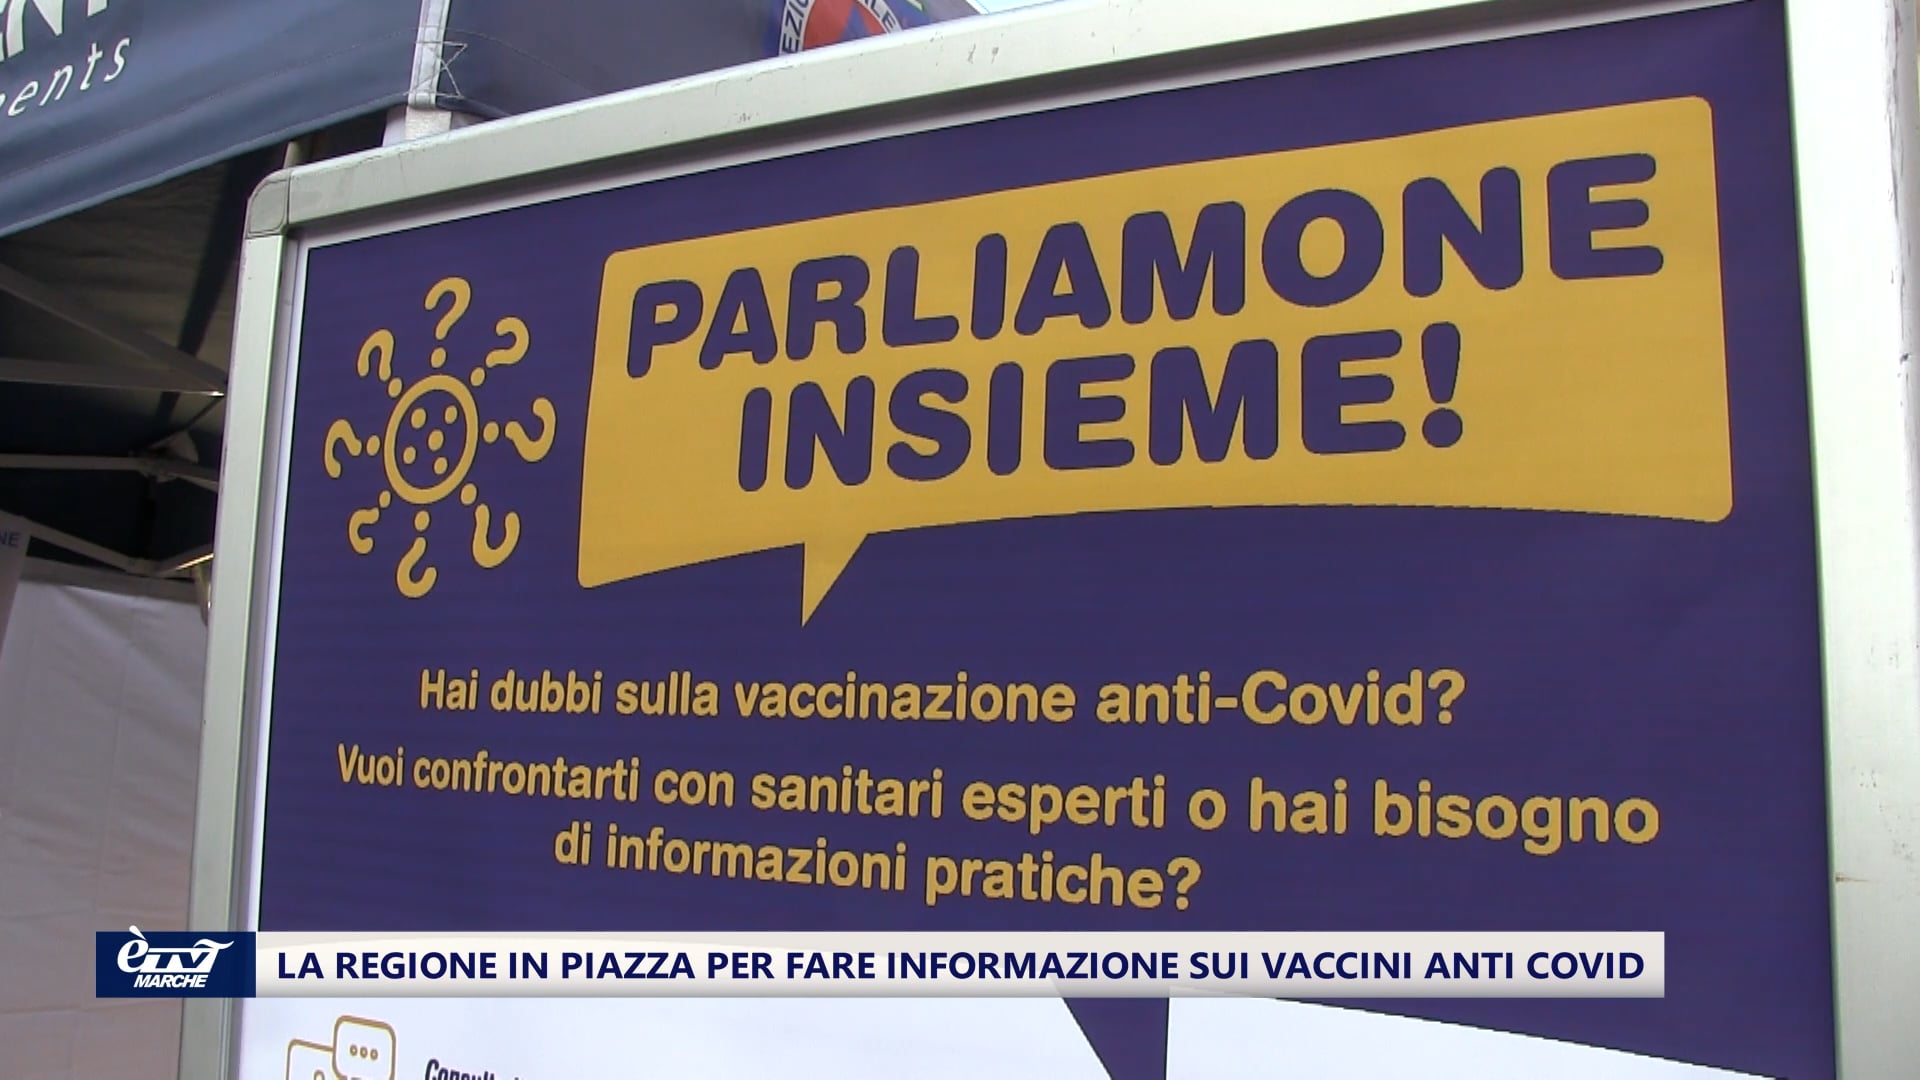 La Regione in piazza per fare informazione sulla vaccinazione anti Covid